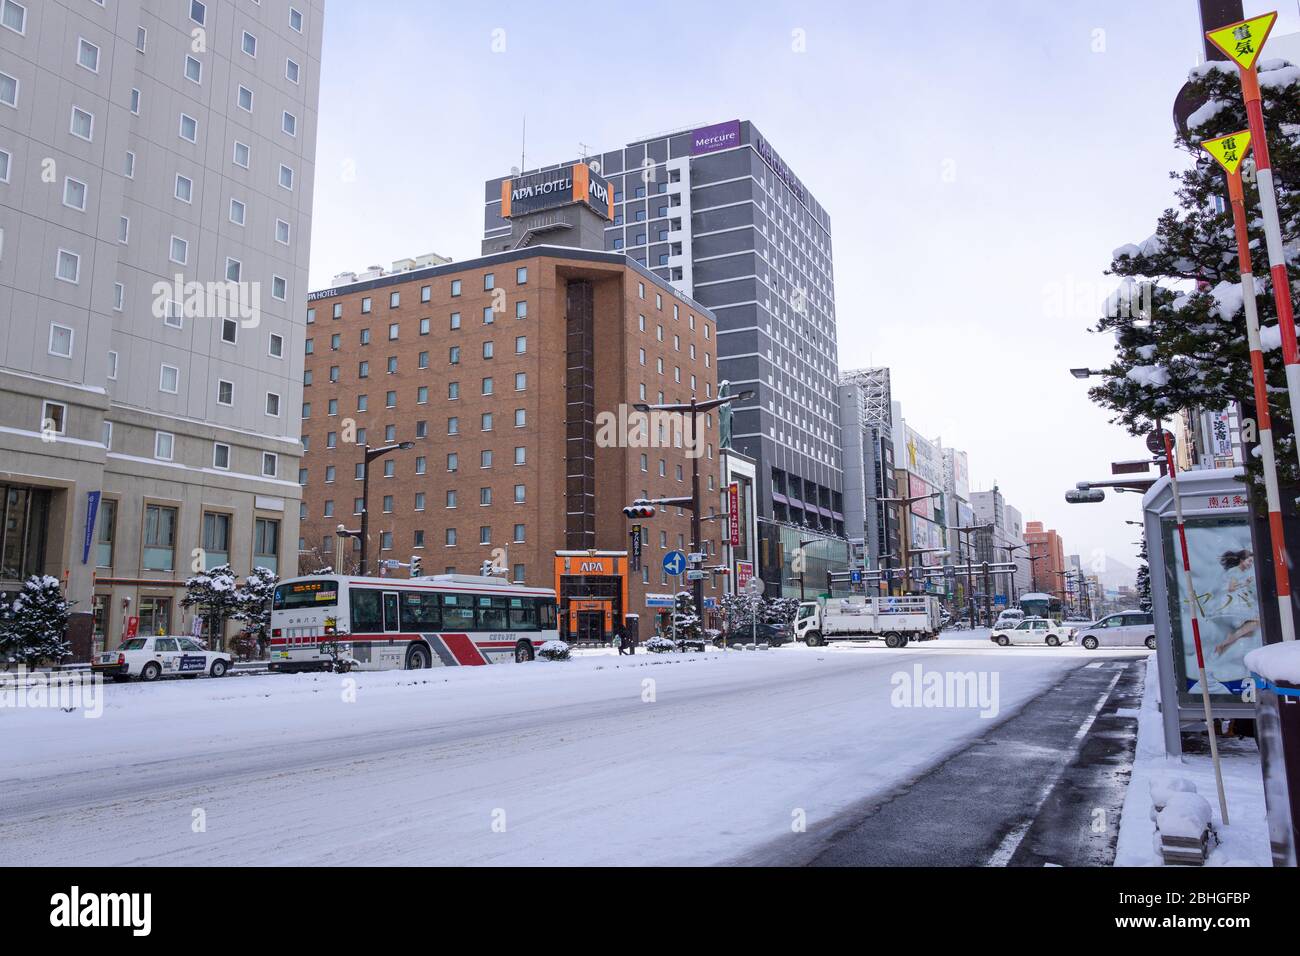 Suzukino est le plus grand quartier de divertissement au Japon au nord de Tokyo, il est rempli de magasins, bars, restaurants, karaoké, pachinko parlors et re Banque D'Images